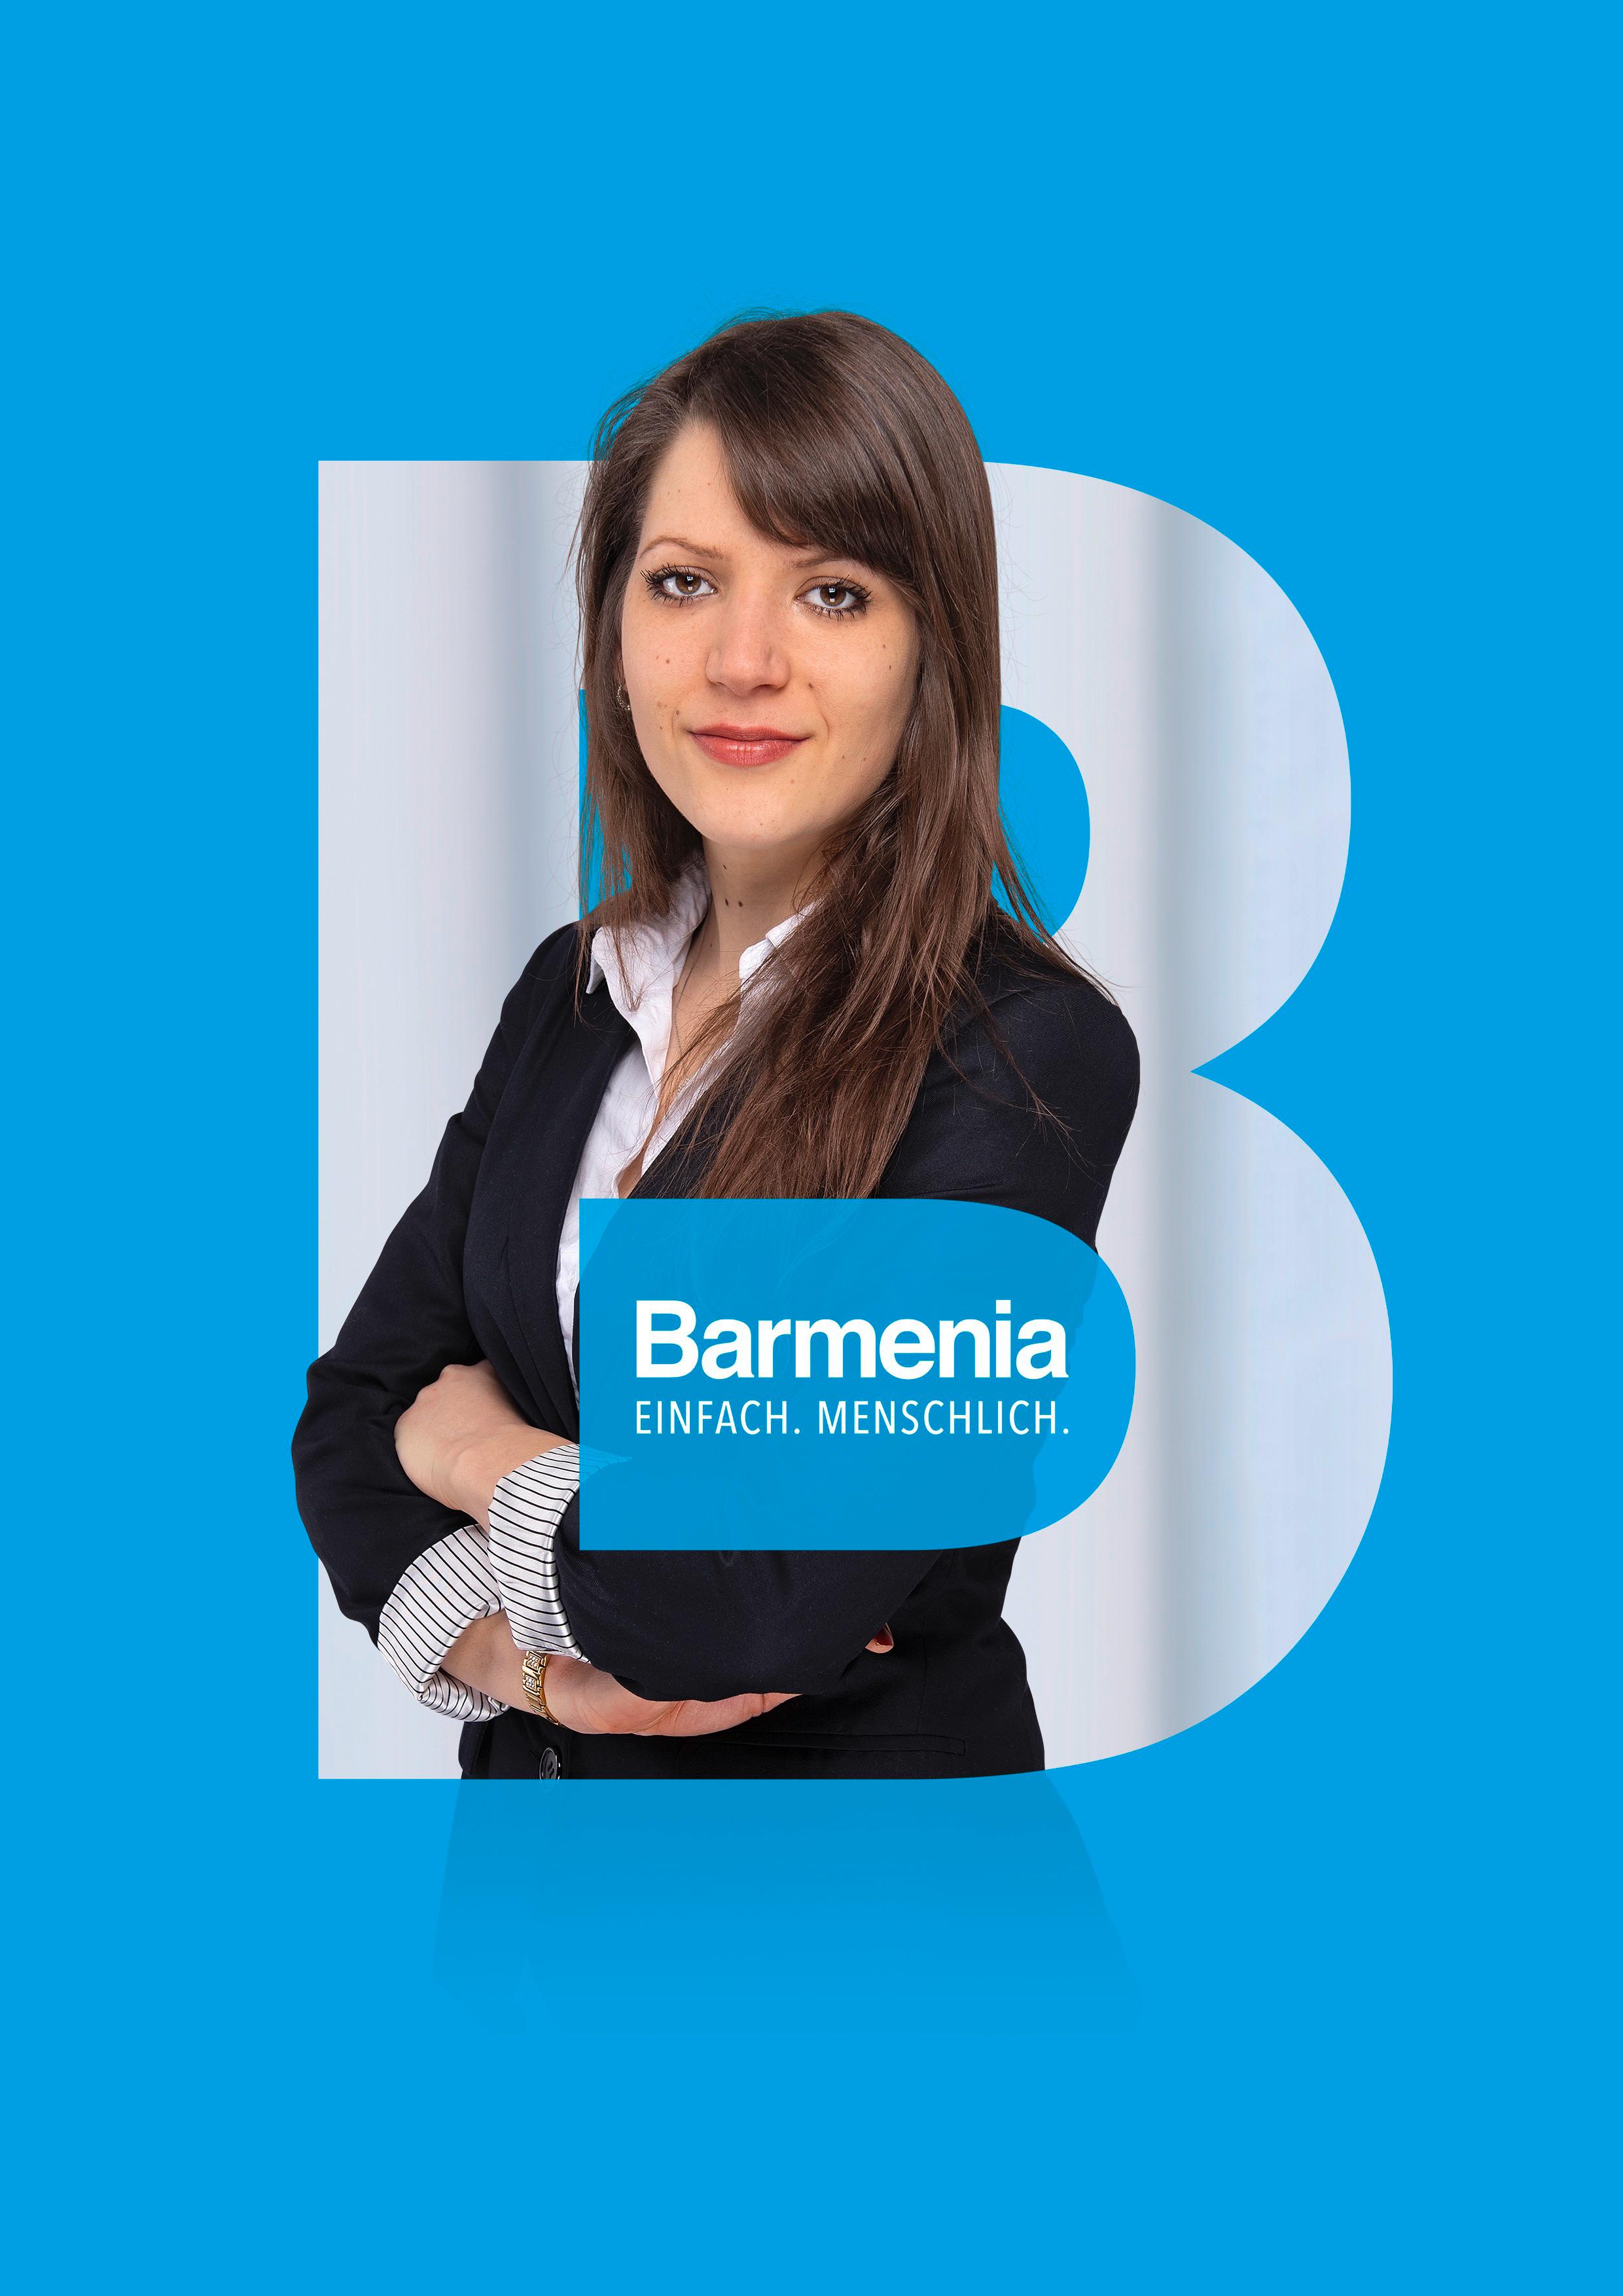 Vanessa Hedtke
Ihre Ansprechpartnerin für die Barmenia Versicherung in Lübeck.